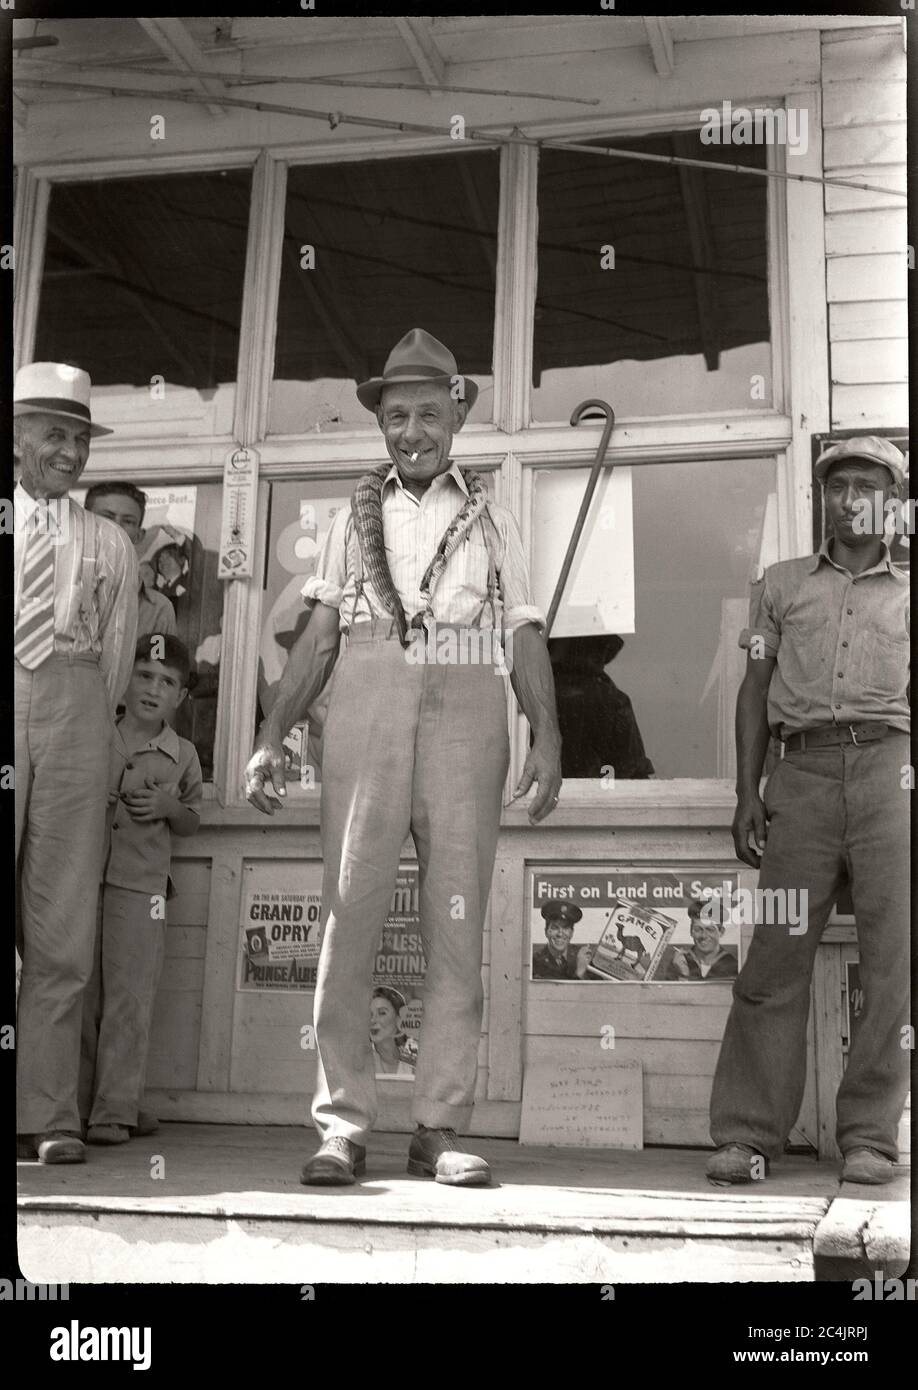 Mann, der vor dem Laden stand und eine Schlange um den Hals trug, um die 1940er Jahre. Bild von 2.5 x 3.5 Zoll Negativ. Stockfoto